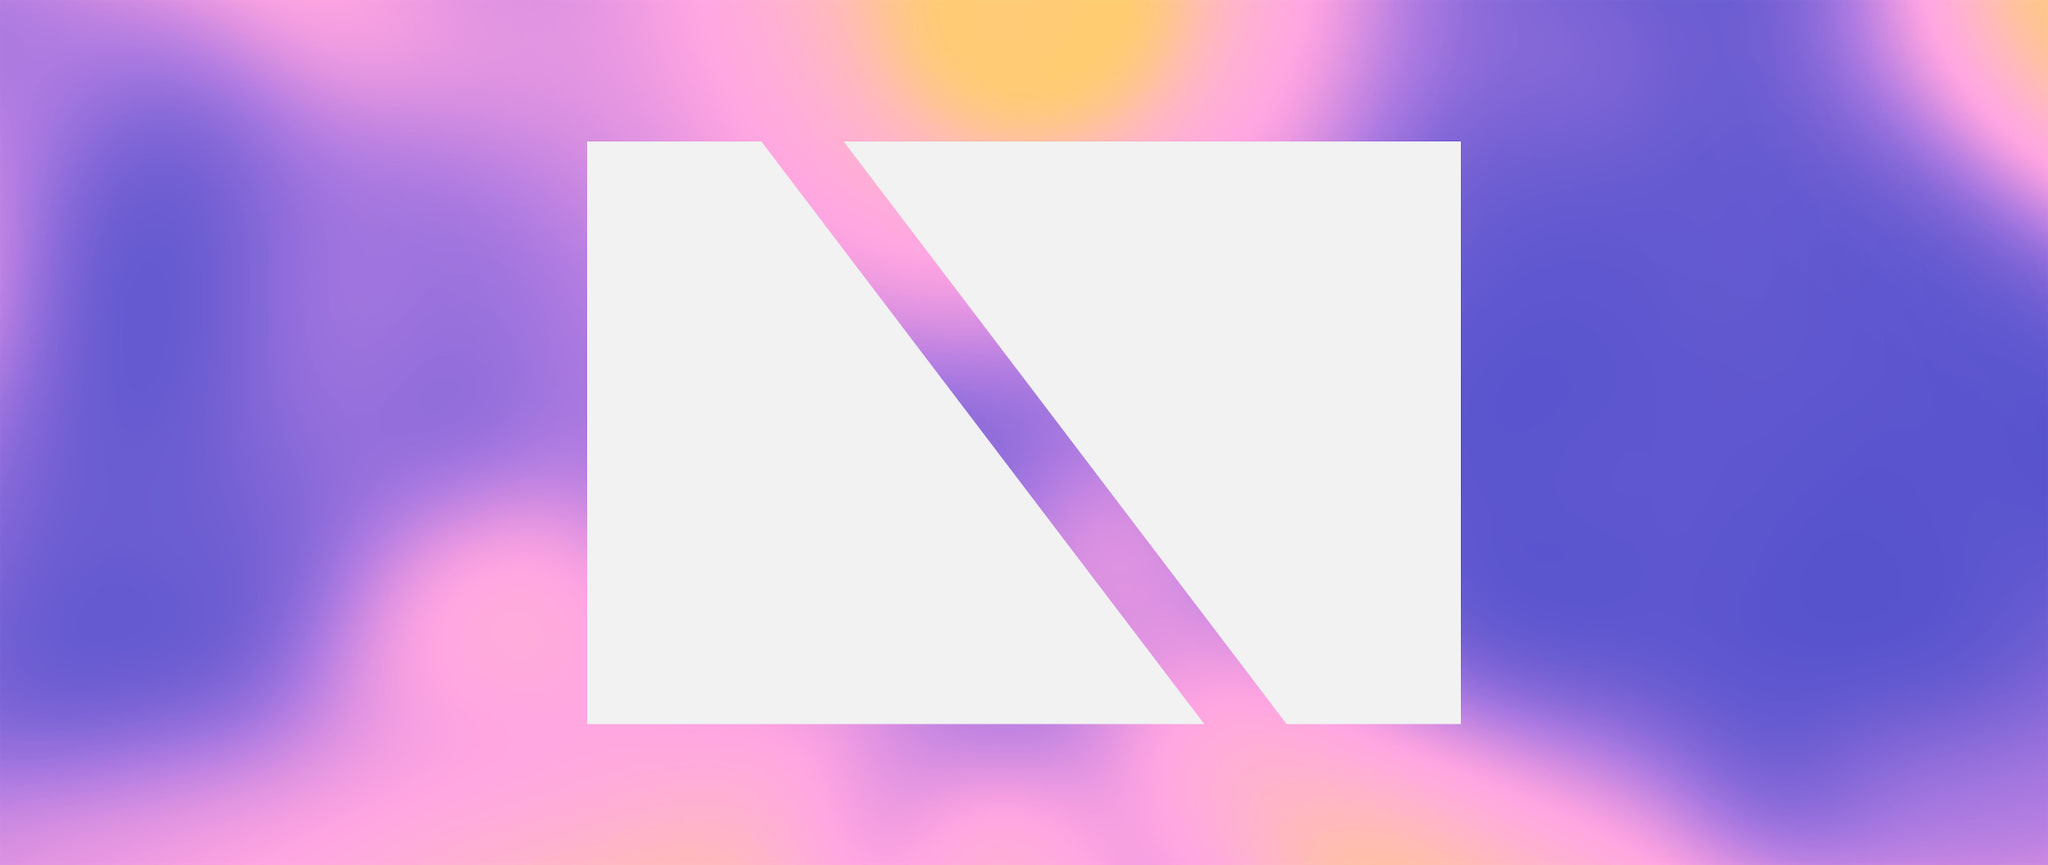 Logotipo da PANGEIA em branco com um fundo composto por um gradiente de várias cores quentes.